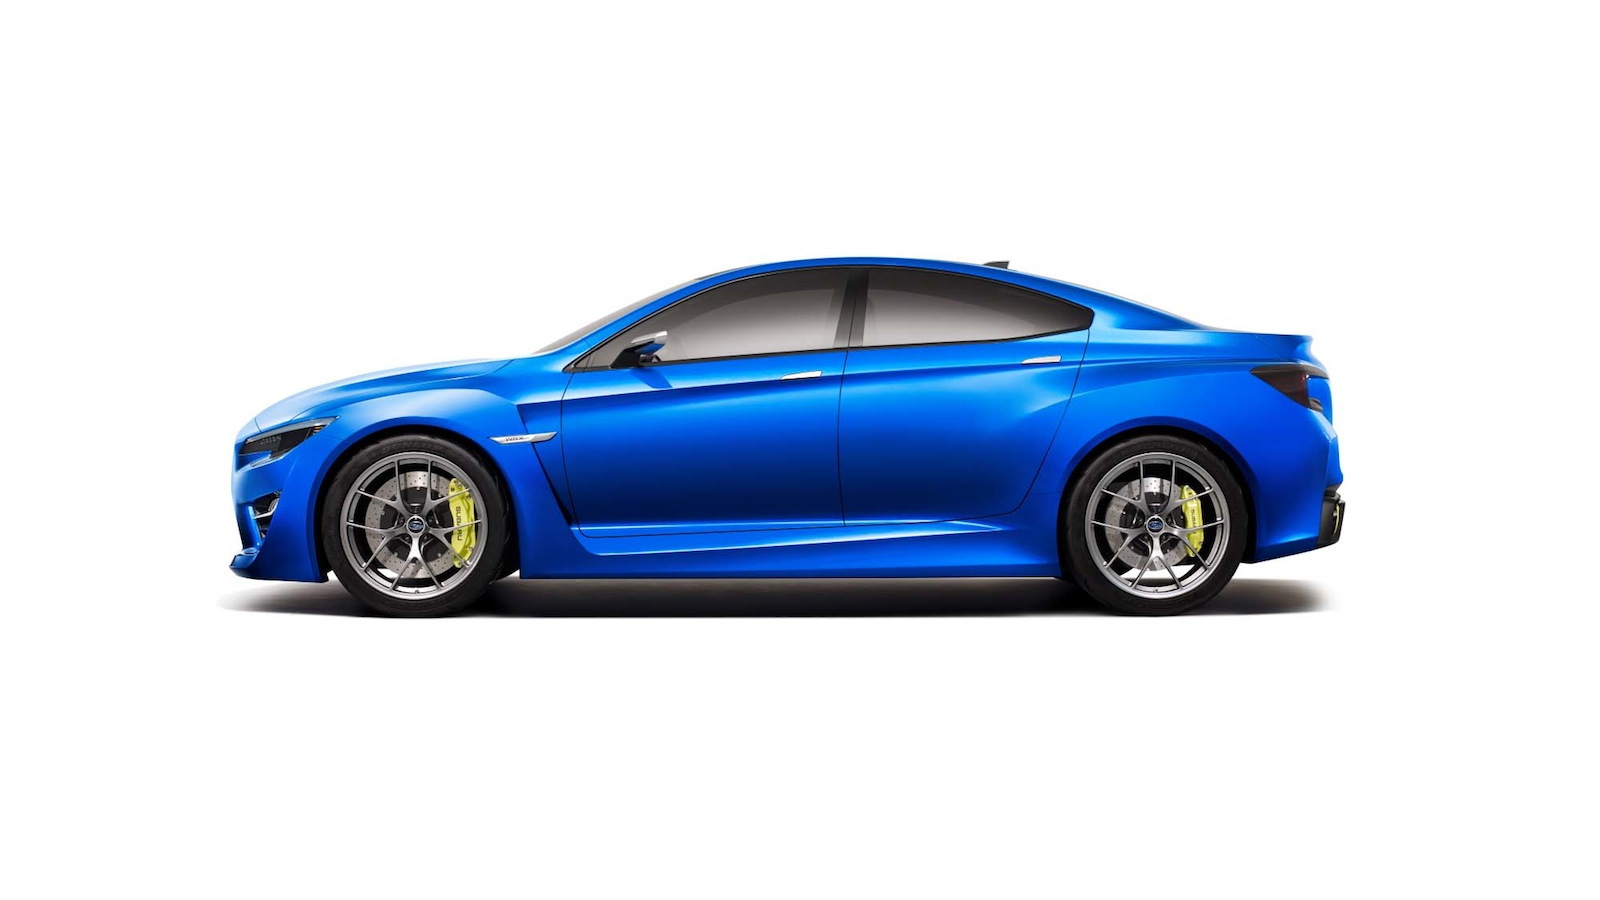 2013 Subaru WRX Concept - image: Subaru